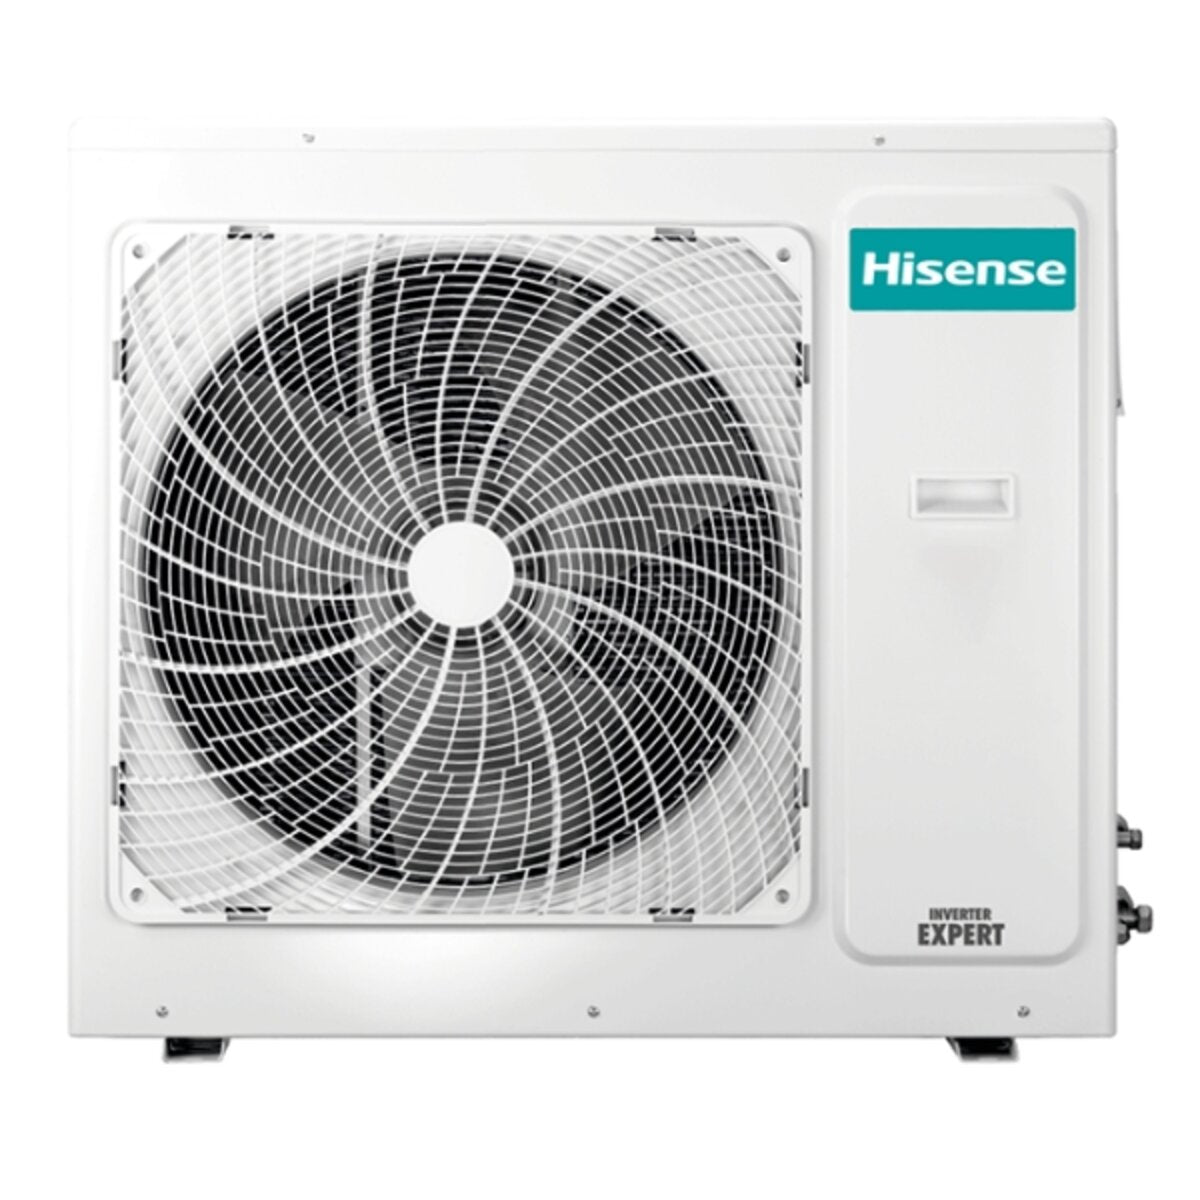 Hisense Hi-Comfort quadri split air conditioner 9000+9000+12000+12000 BTU inverter A++ wifi outdoor unit 10.0 kW